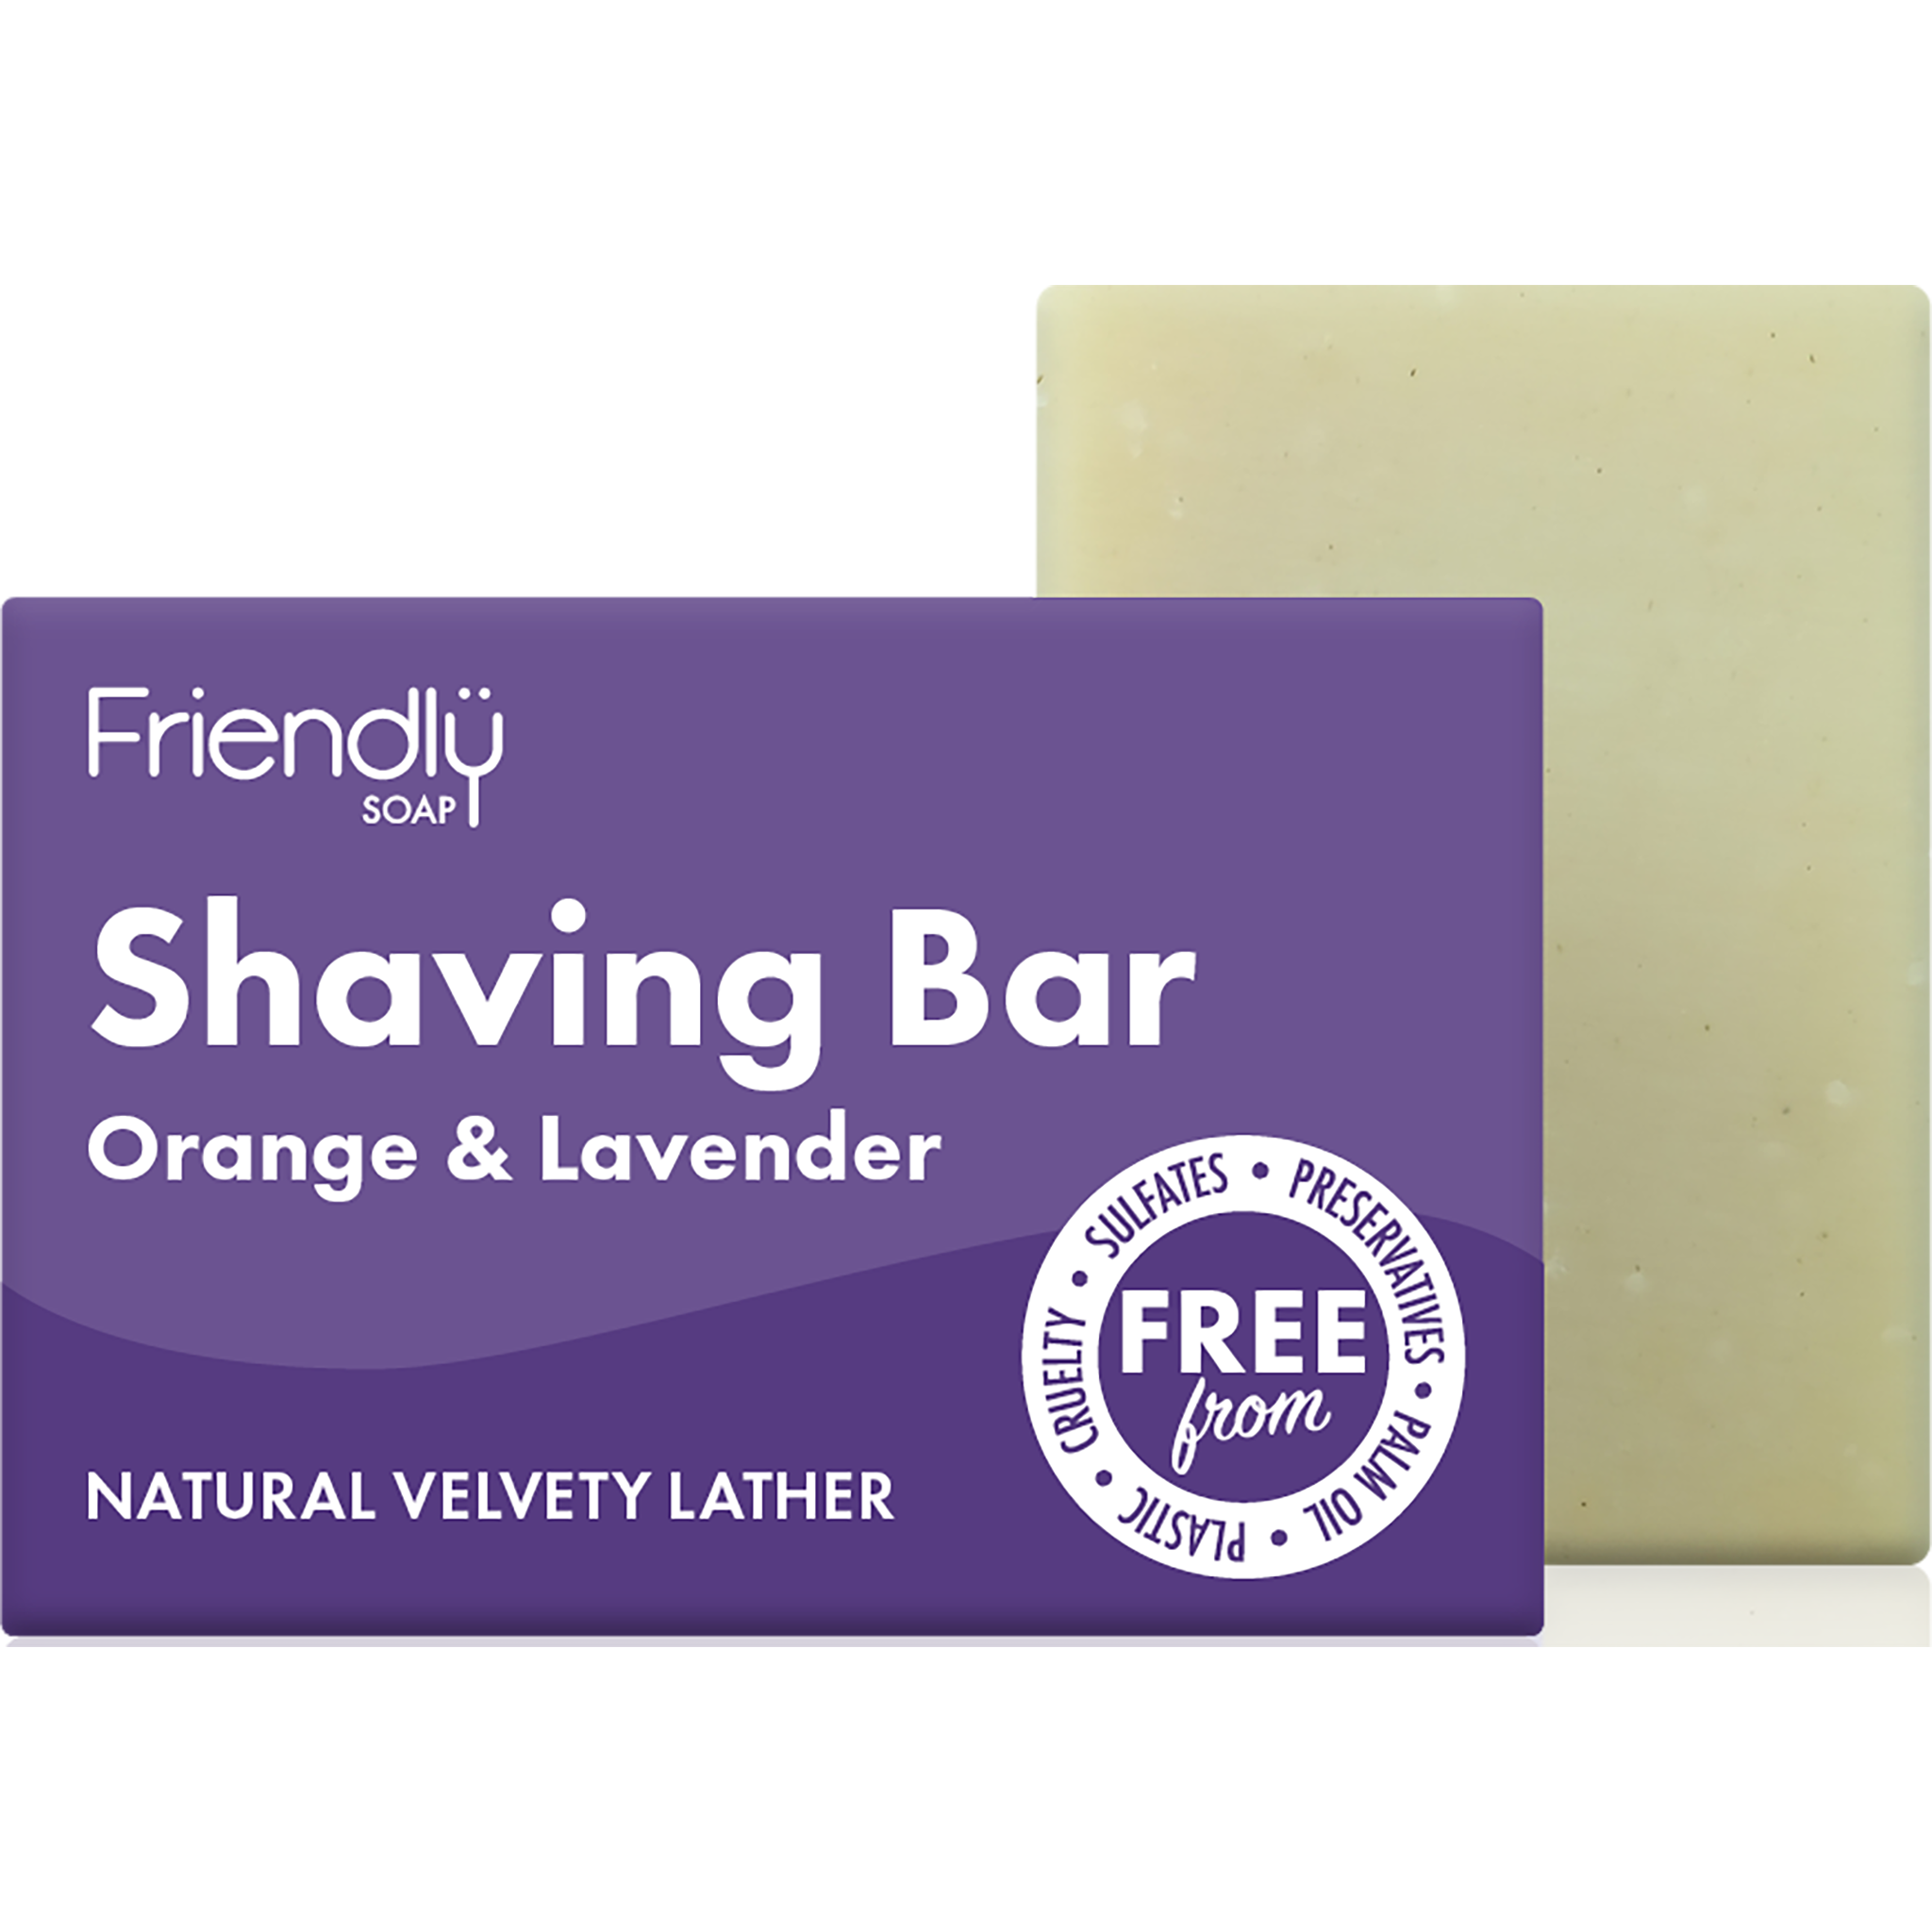 Shaving Bar Orange & Lavender